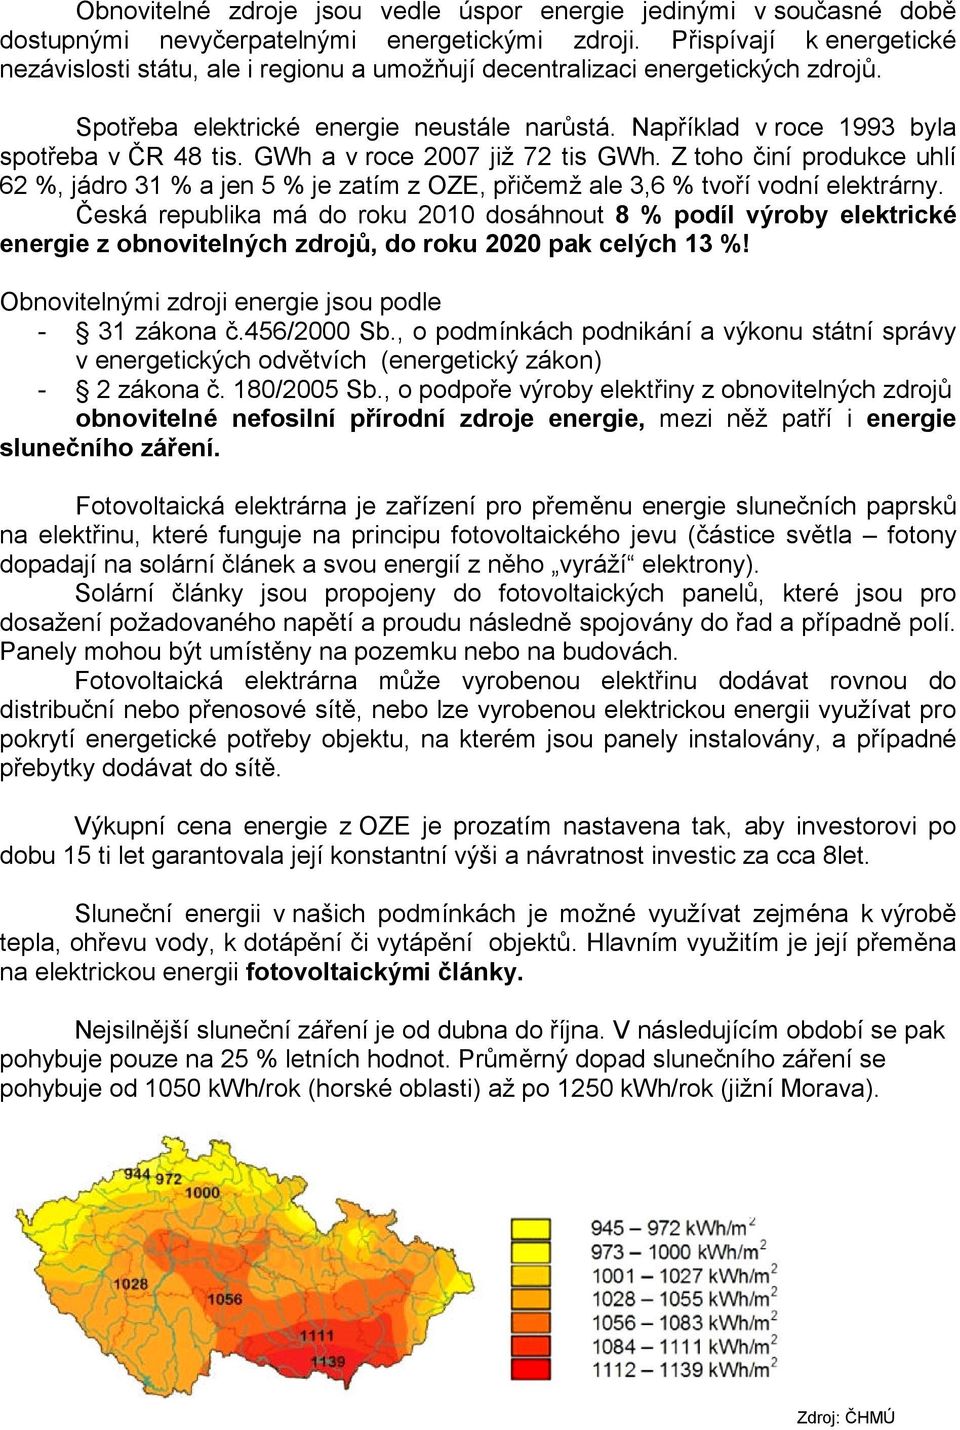 Například v roce 1993 byla spotřeba v ČR 48 tis. GWh a v roce 2007 již 72 tis GWh. Z toho činí produkce uhlí 62 %, jádro 31 % a jen 5 % je zatím z OZE, přičemž ale 3,6 % tvoří vodní elektrárny.